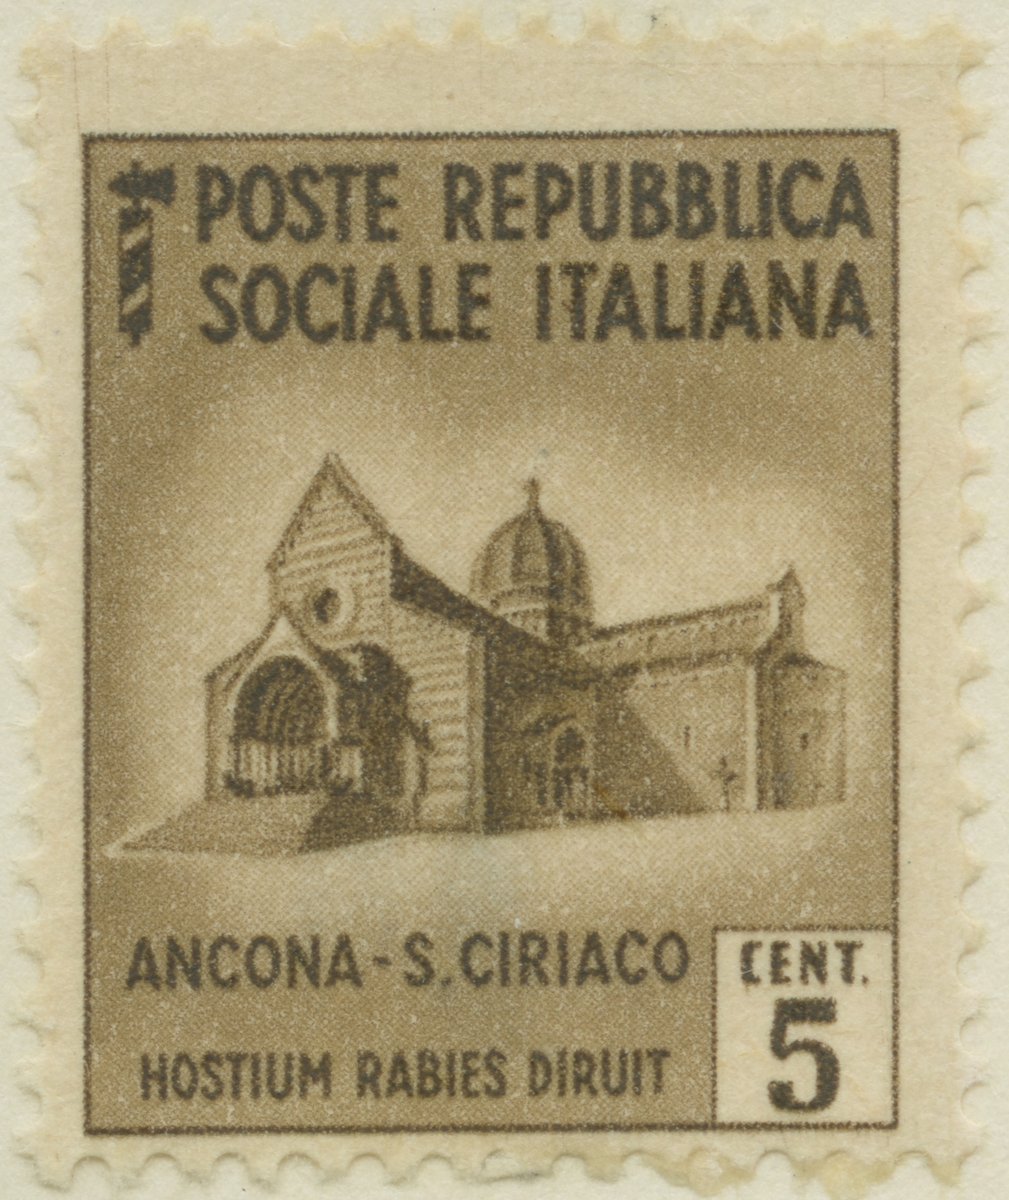 Frimärke ur Gösta Bodmans filatelistiska motivsamling, påbörjad 1950.
Frimärke från Italien, 1944. Motiv av kyrkan San Ciriaco i Ancona.